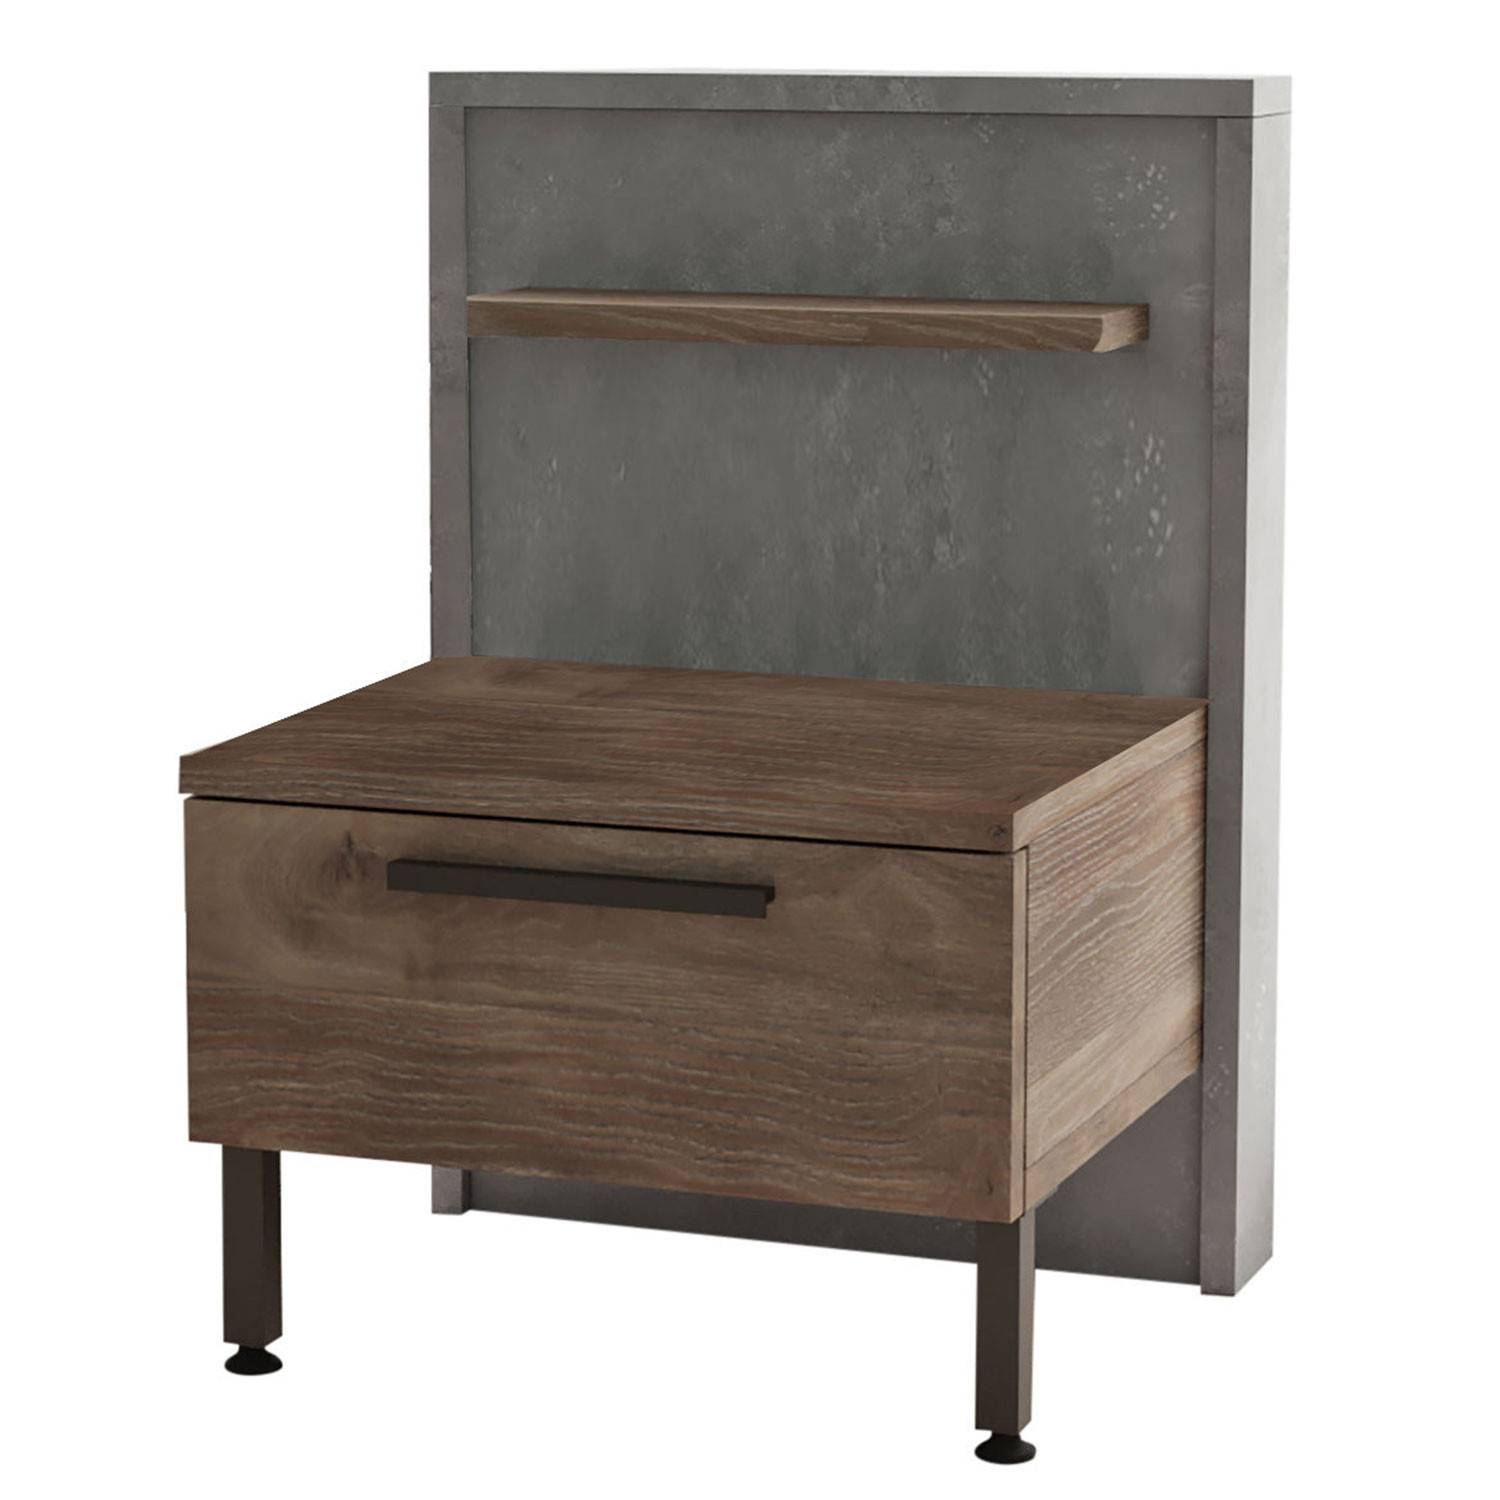 Nachttisch 1 Schublade Ralta moderner Stil dunkles Holz und grau